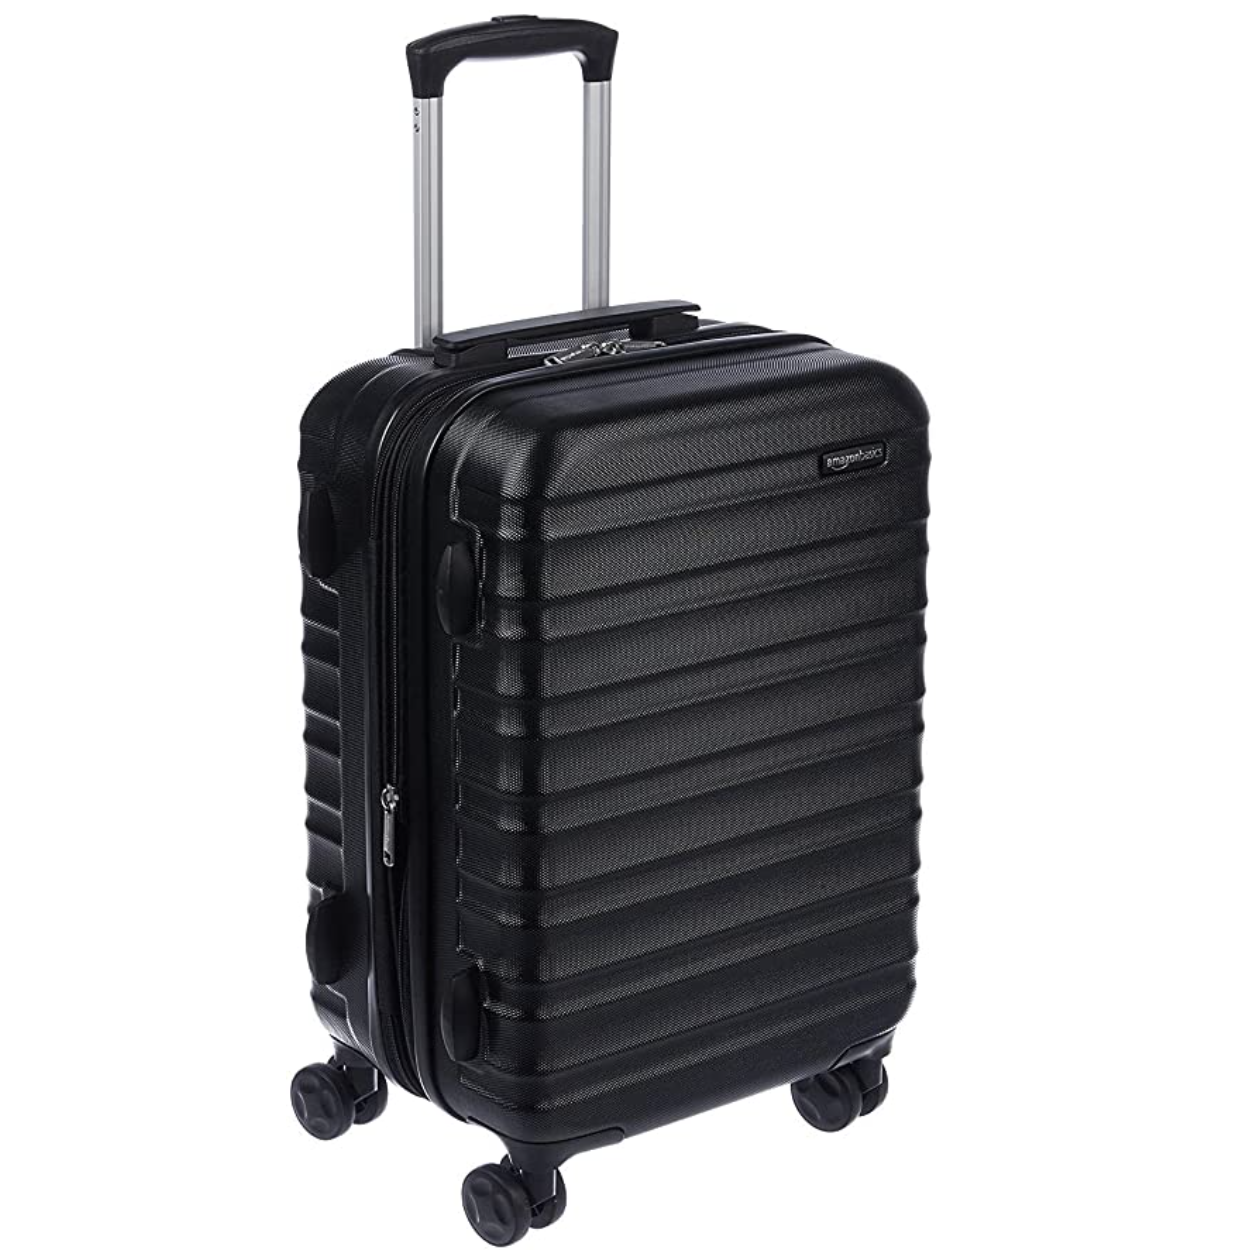 AmazonBasics Wheeled Carry On Suitcase, 21-Inch